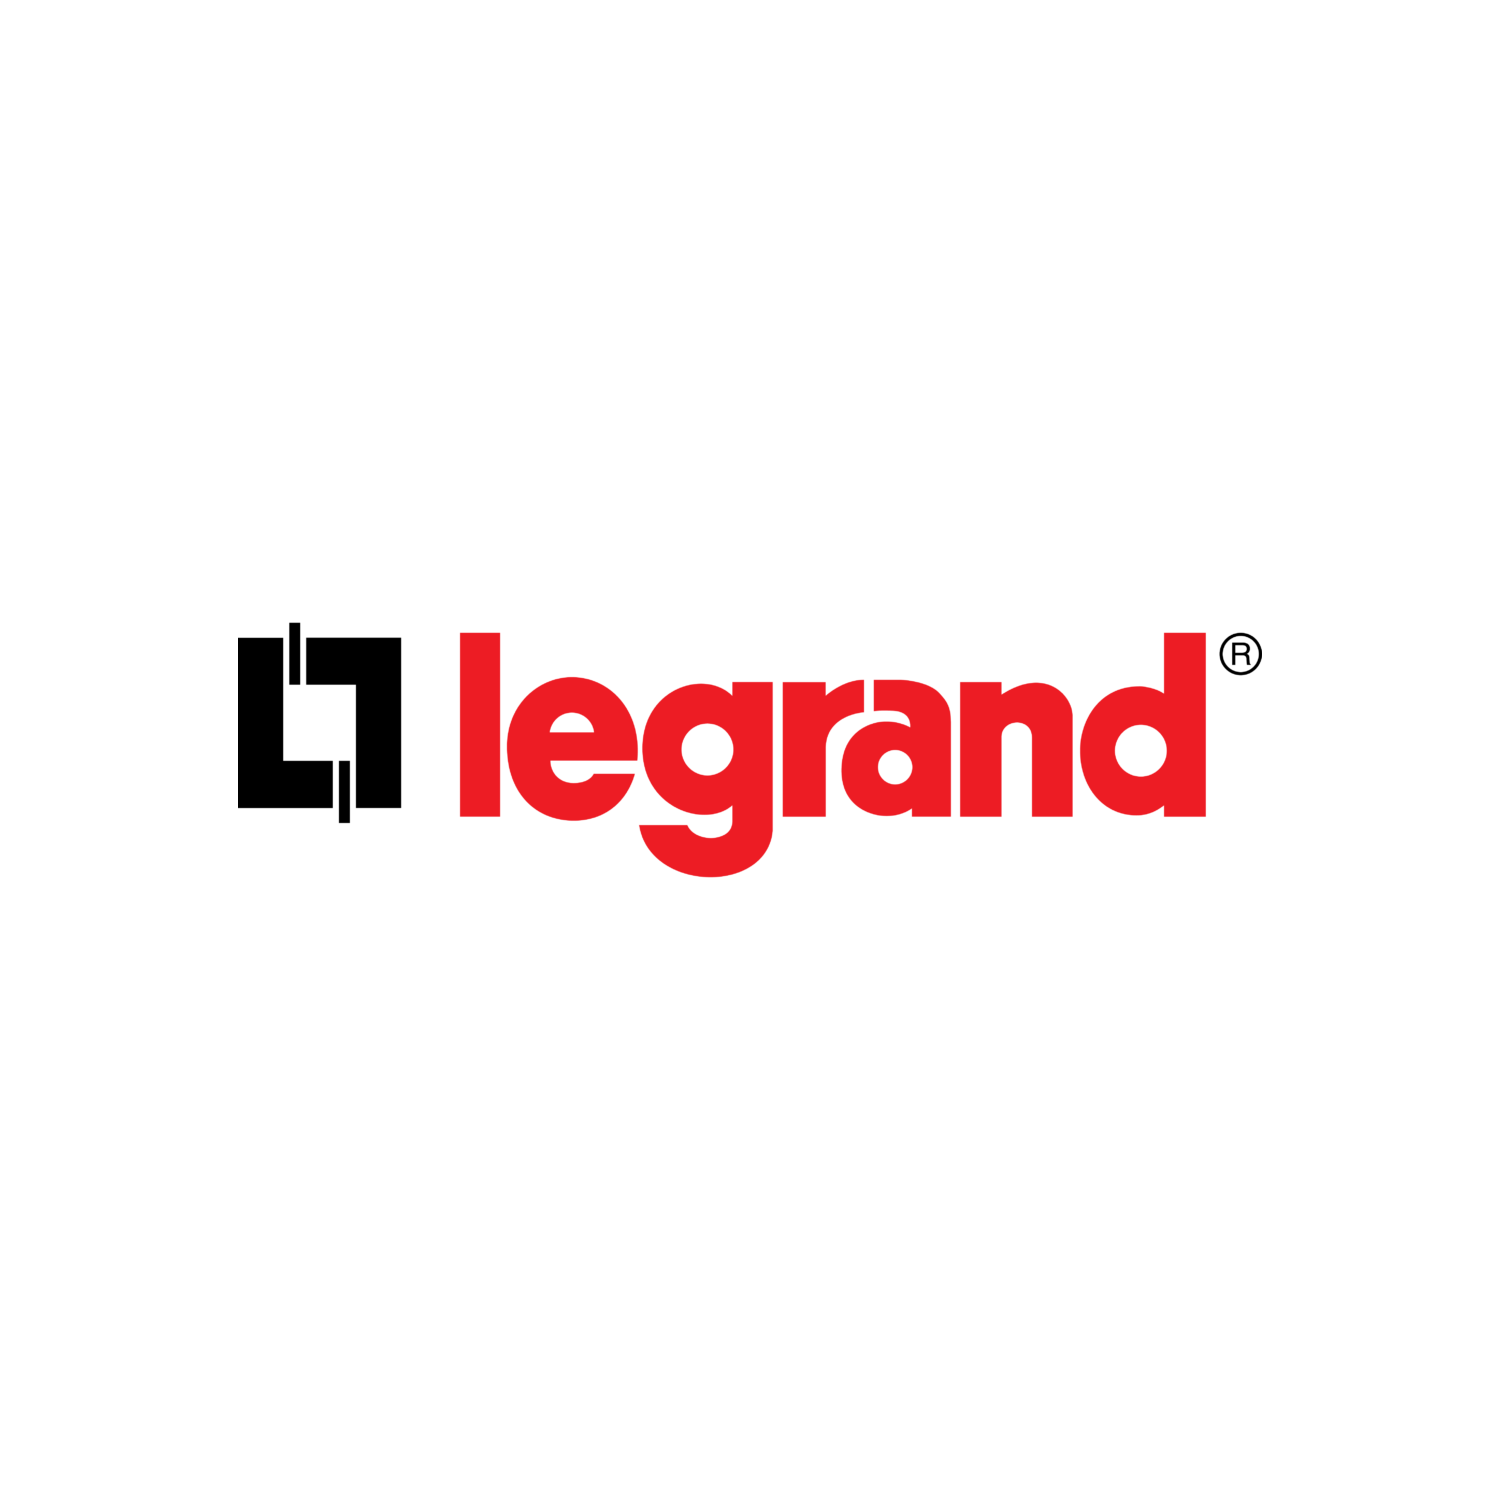 Legrand-Red-1024x256